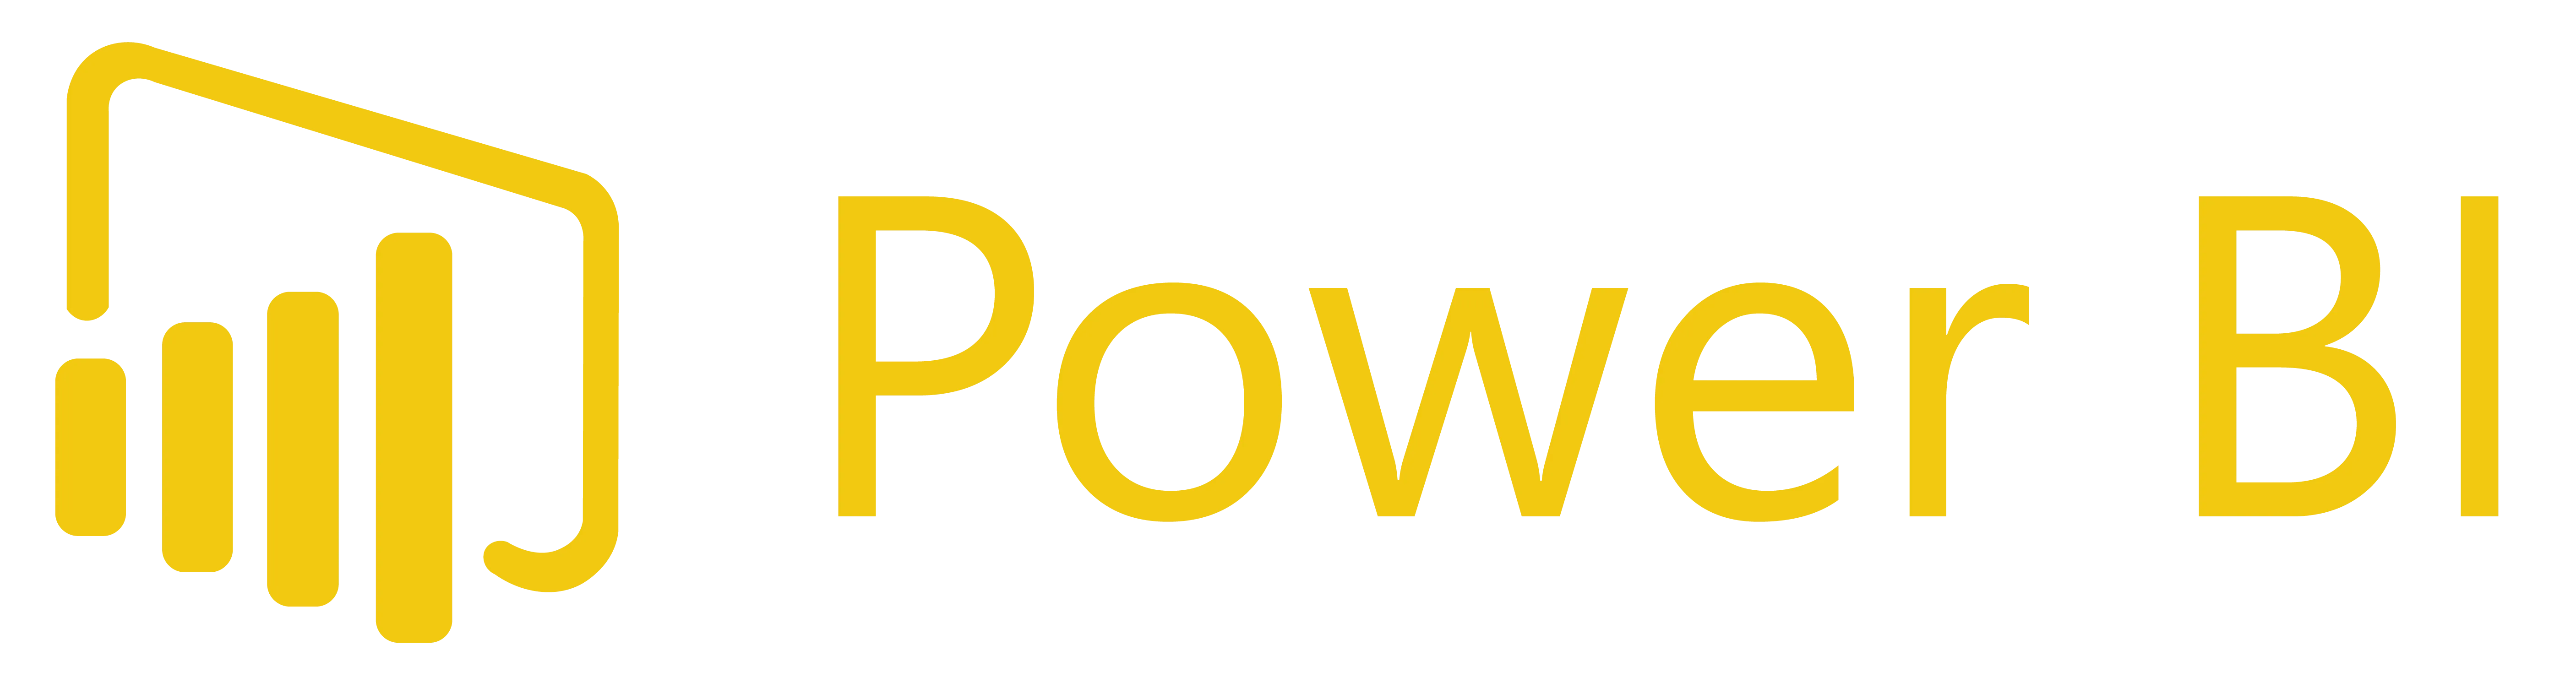 power-bi